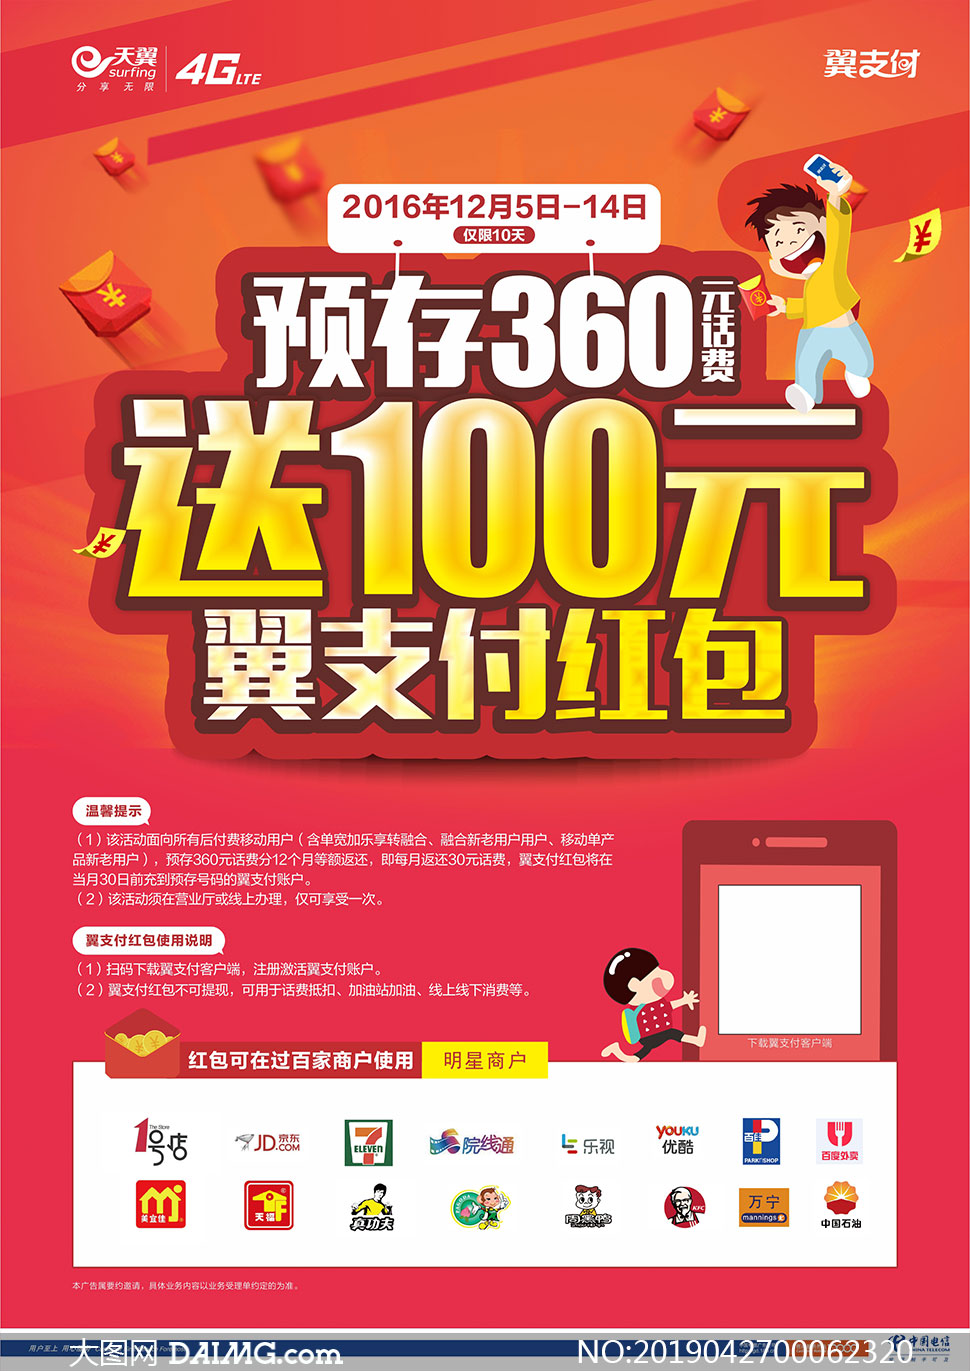 中国电信预存话费宣传海报矢量素材